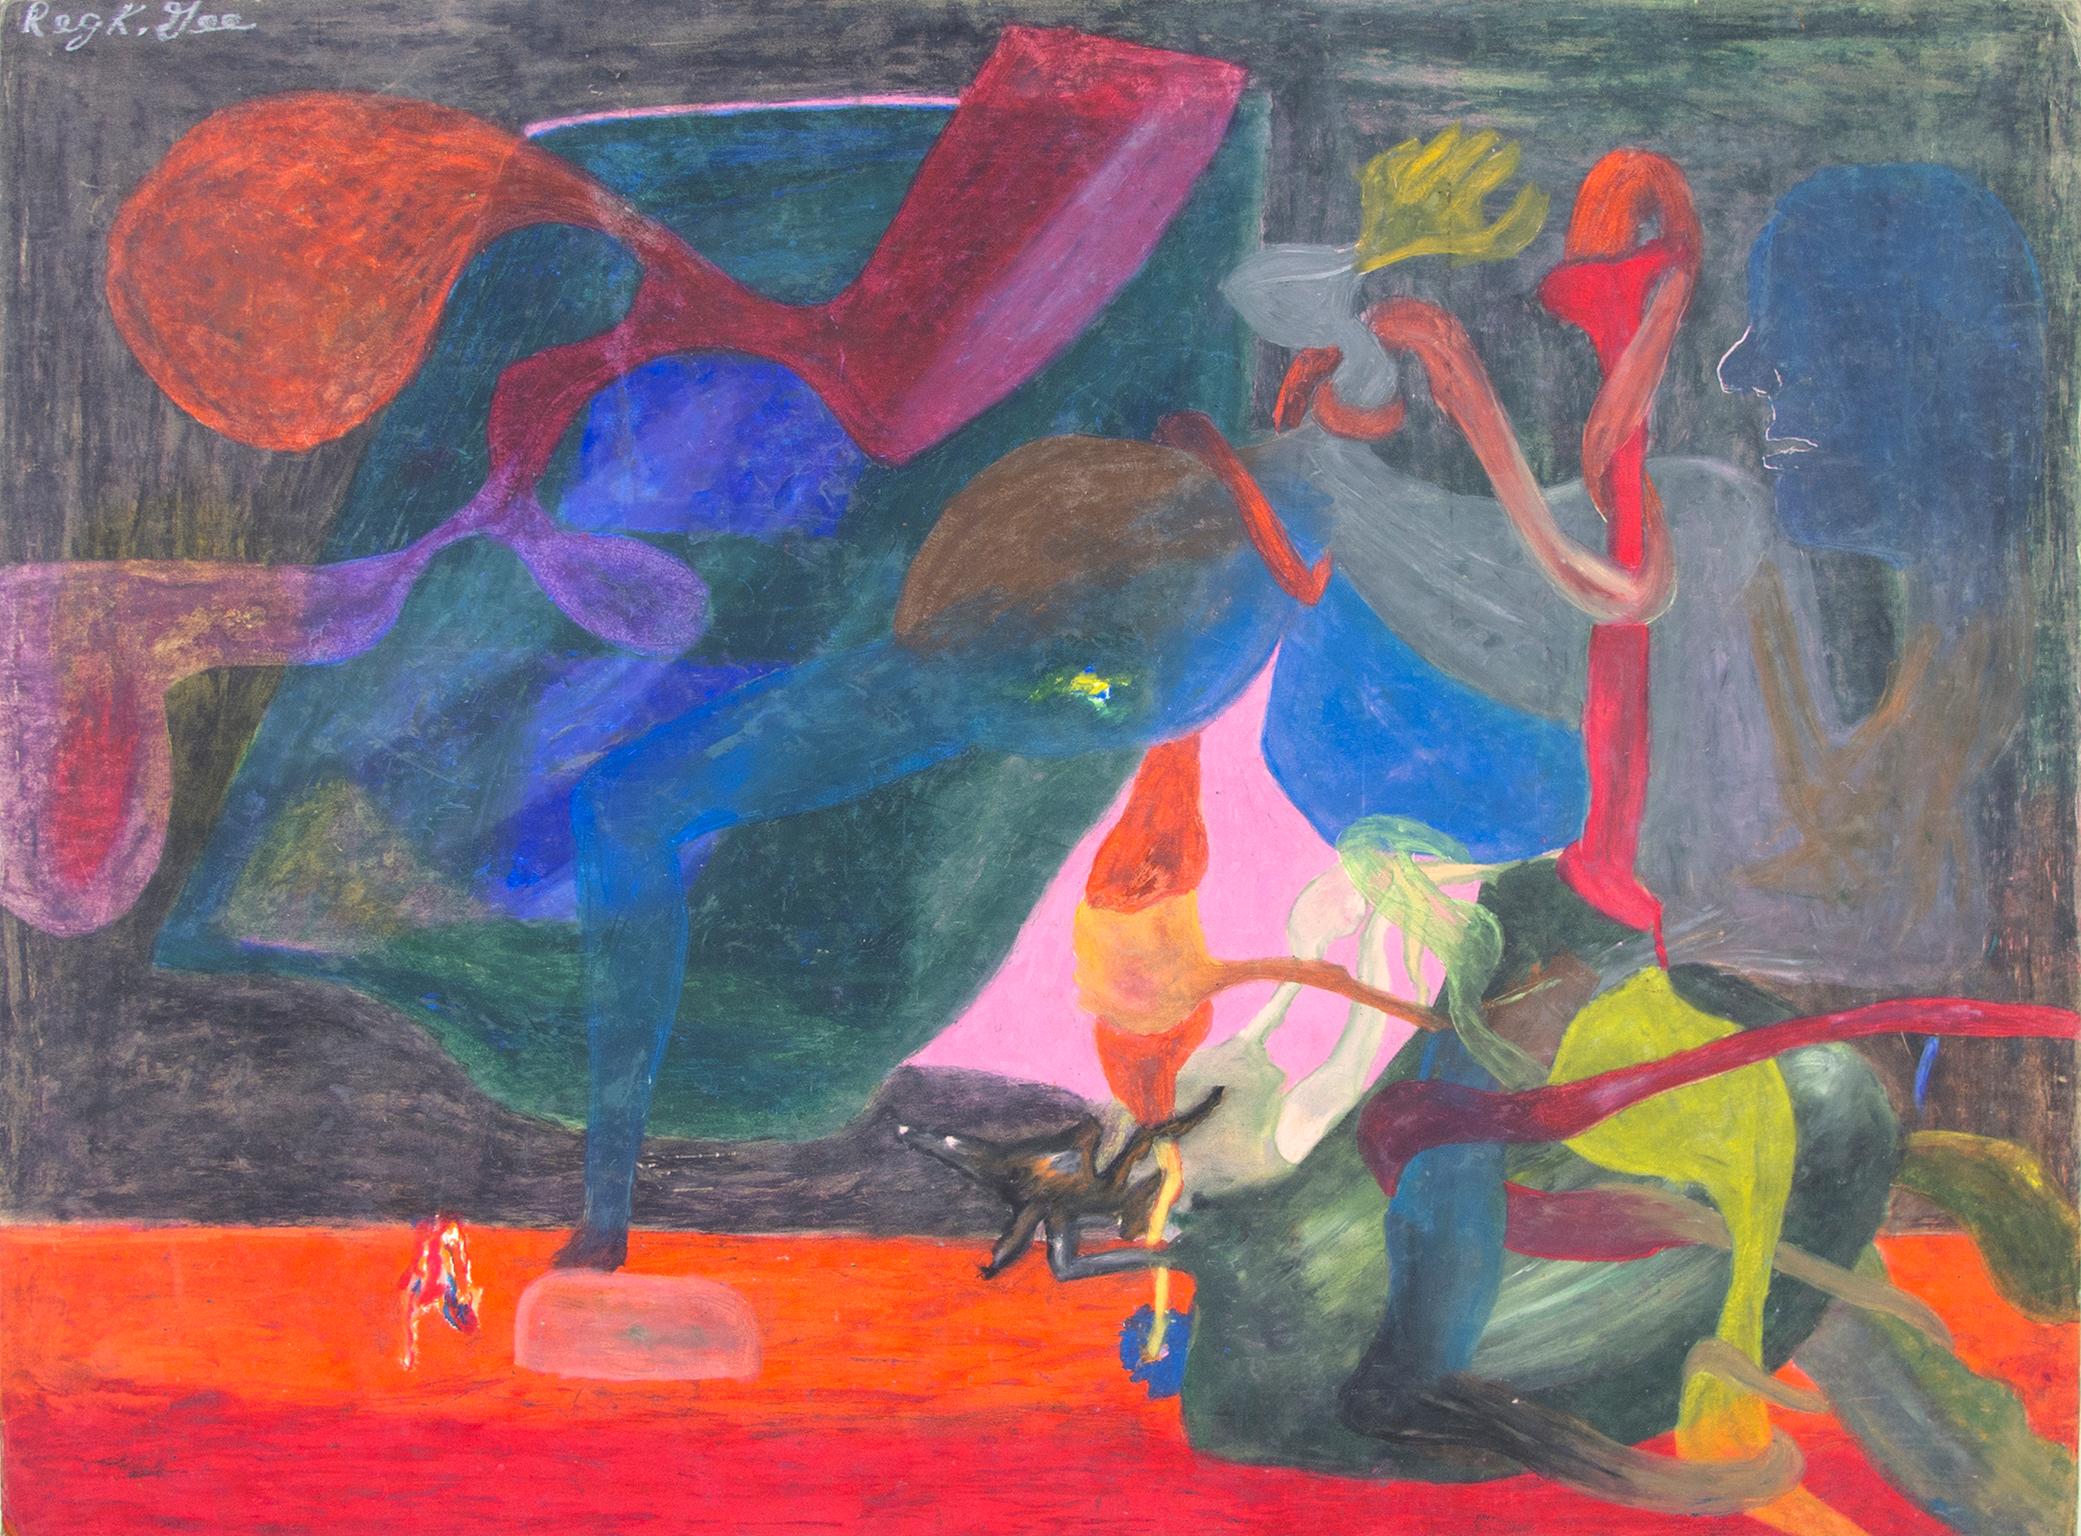 "Therapeutisches Pferdewissen" ist eine Original-Ölpastellzeichnung auf Karton von Reginald K. Gee. Der Künstler hat das Werk oben links signiert. Dieses Werk zeigt eine surreale und abstrakte Umgebung mit leuchtenden Farben und abstrakten Figuren.